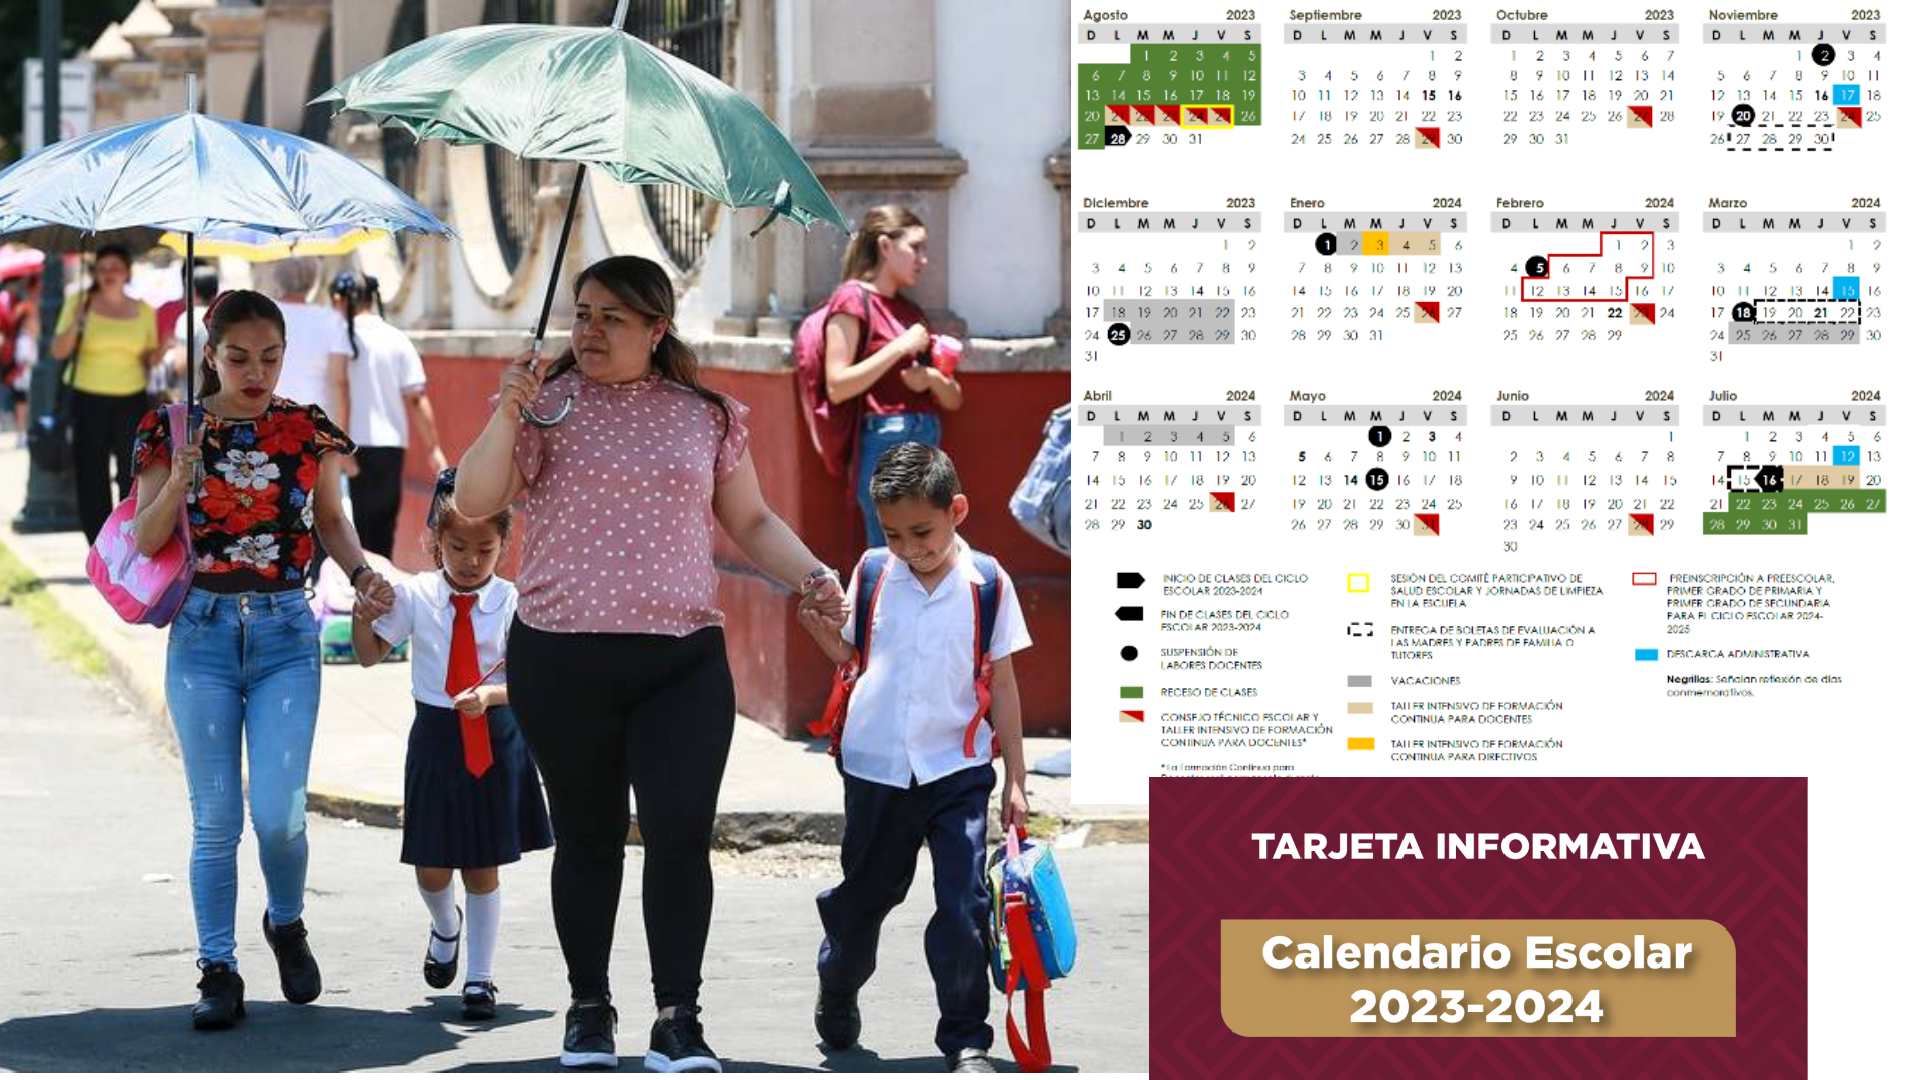 Calendario Escolar 2023-2024: conoce cuando empieza y termina, los días festivos y las vacaciones.